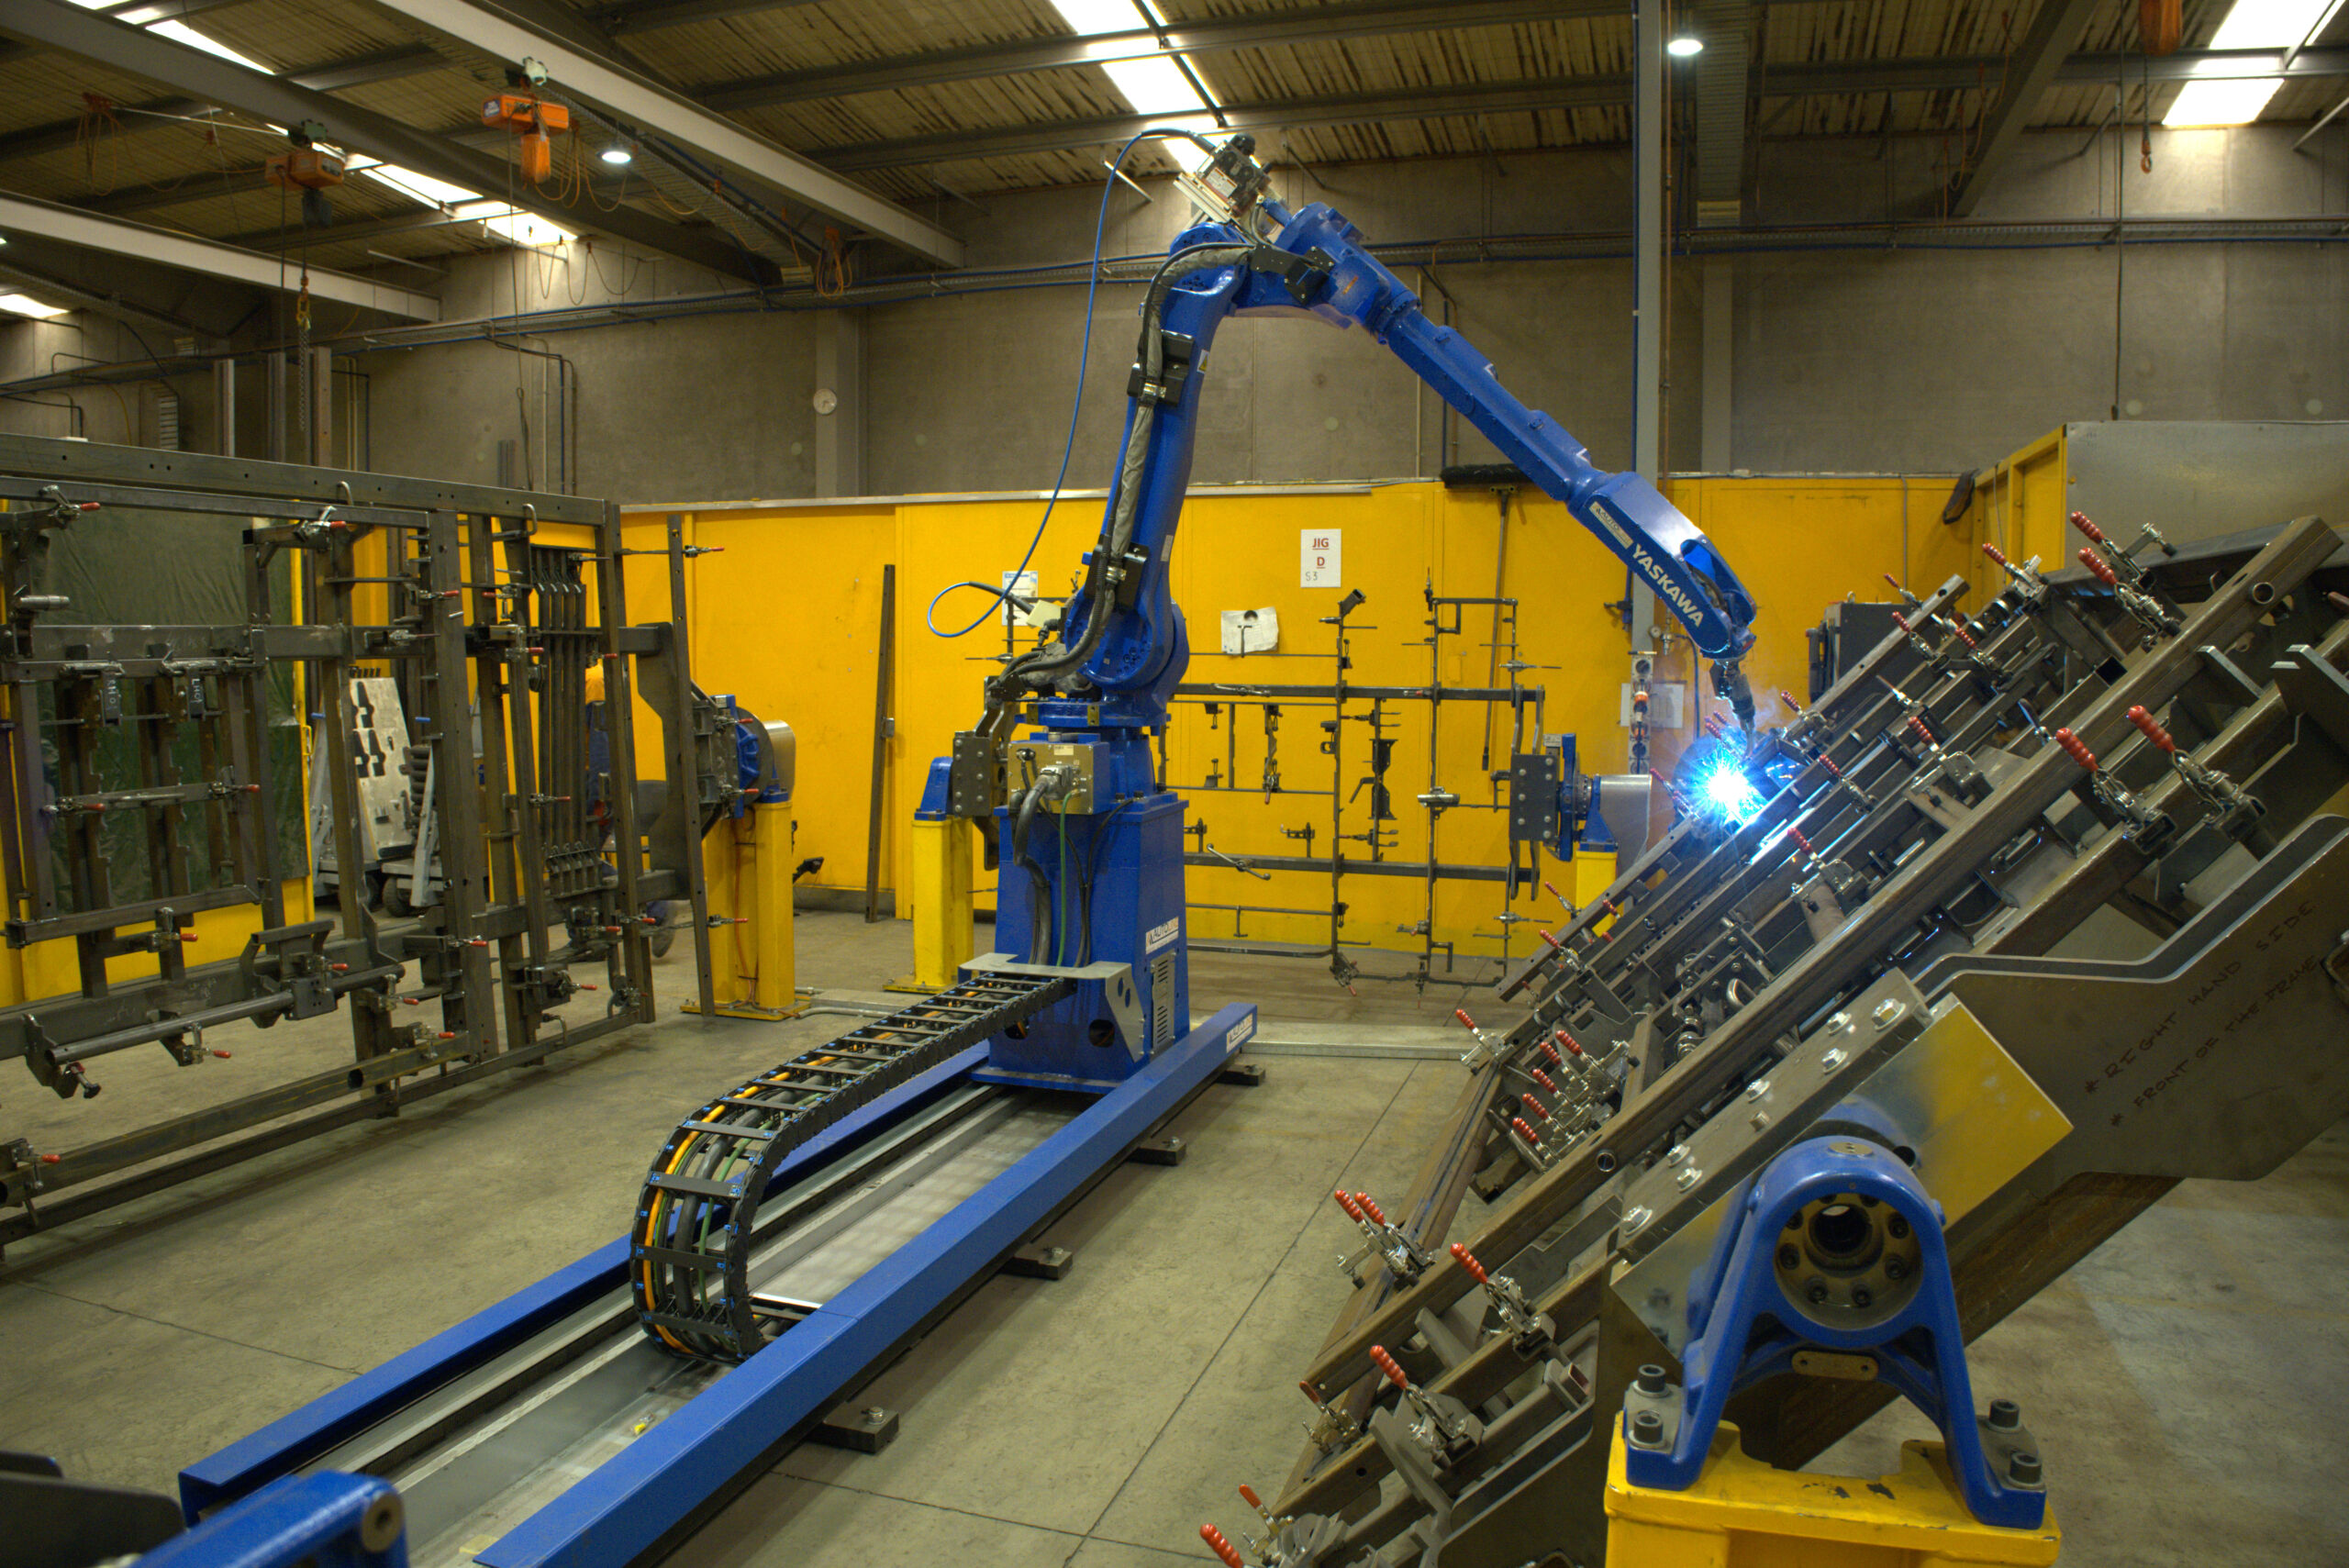 Welding The Big Jobs - Autoline Robot Welding at Te Pari